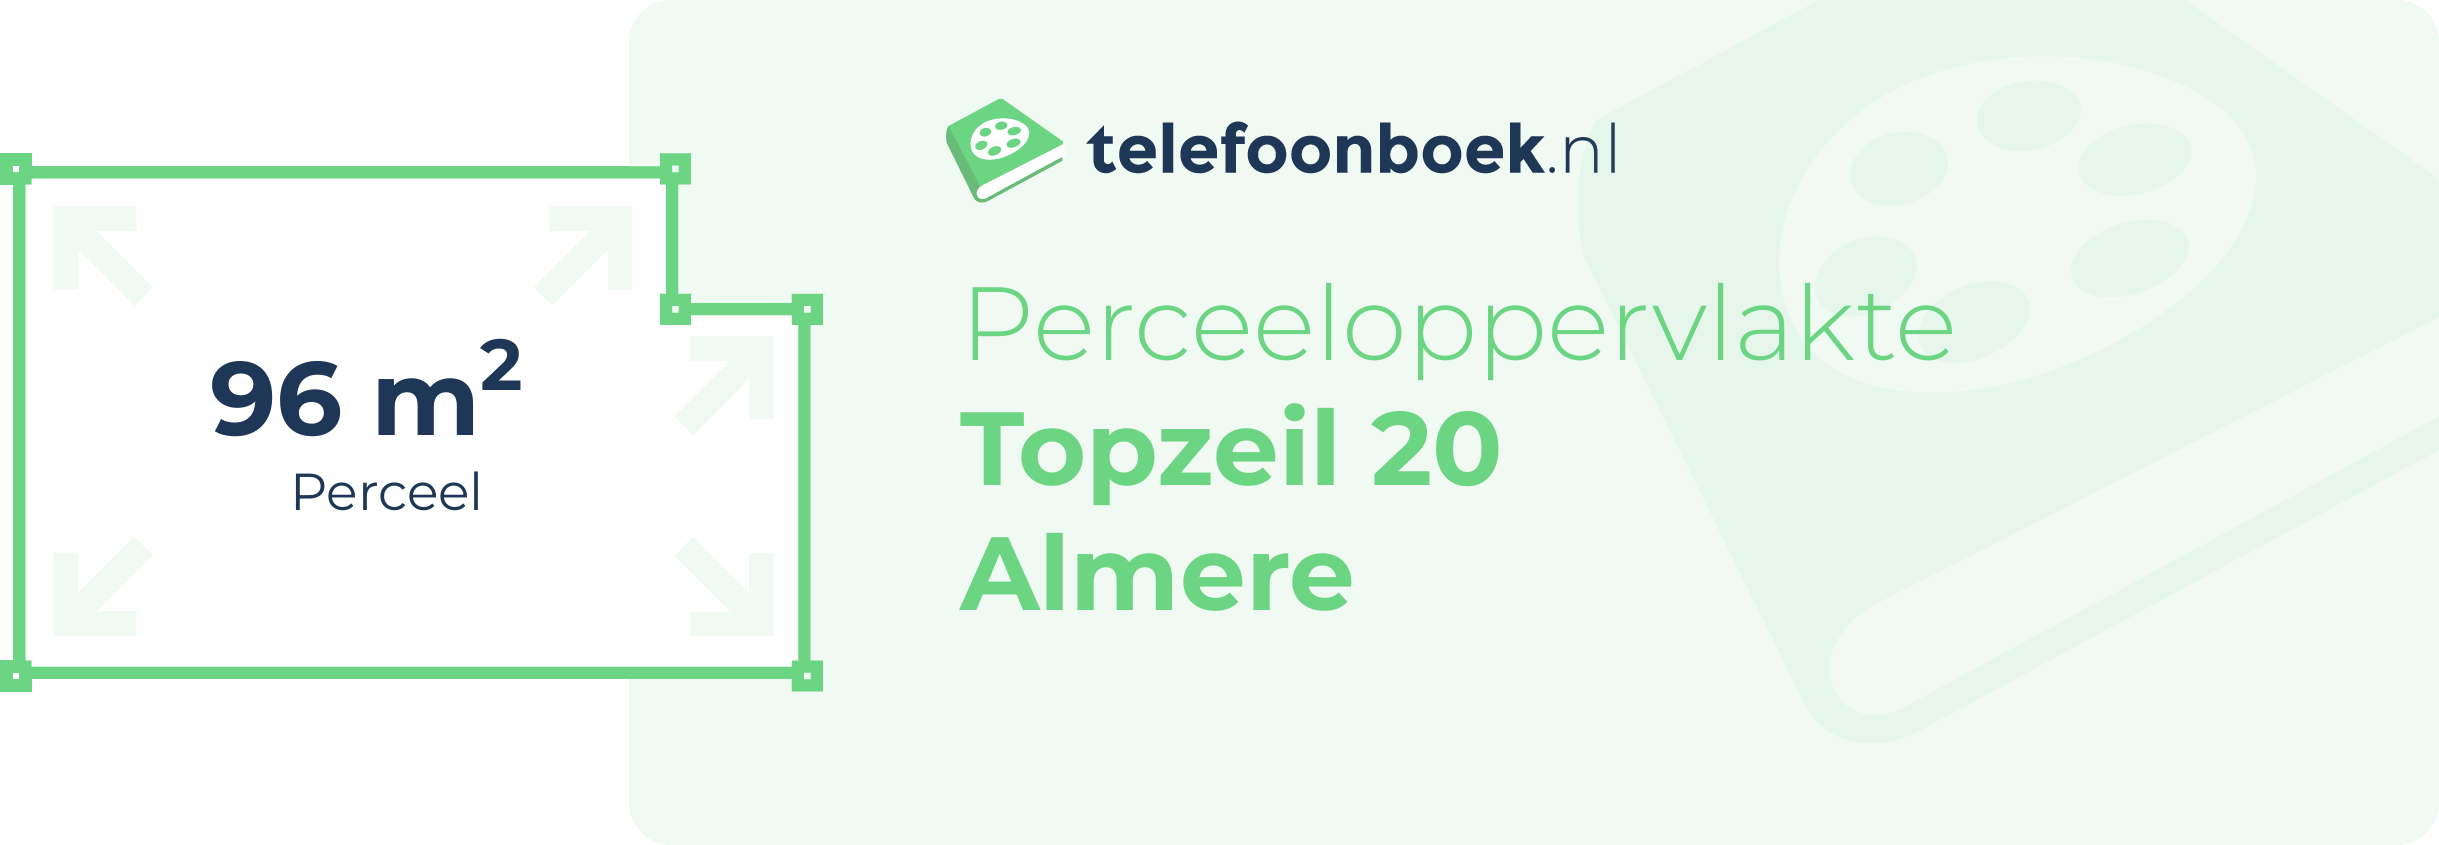 Perceeloppervlakte Topzeil 20 Almere